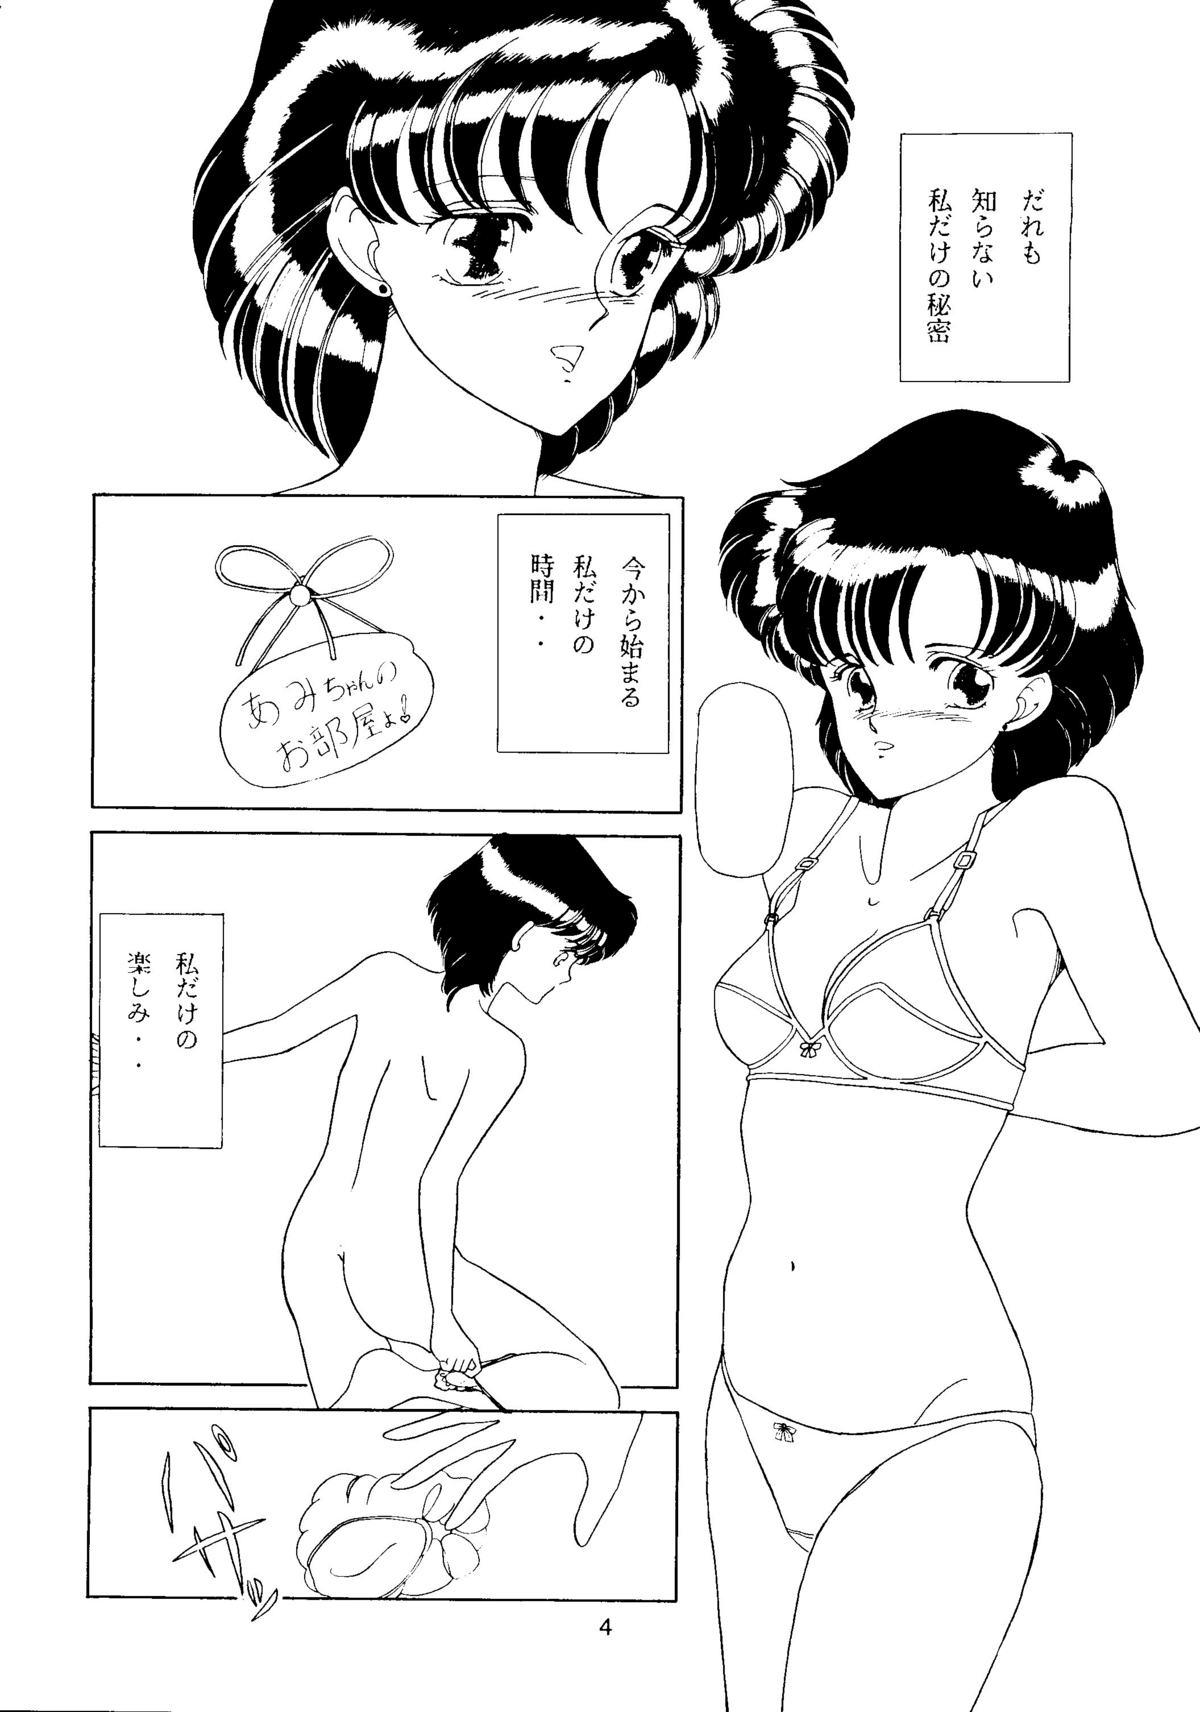 Nuru Moon Girl - Sailor moon Gayporn - Page 5